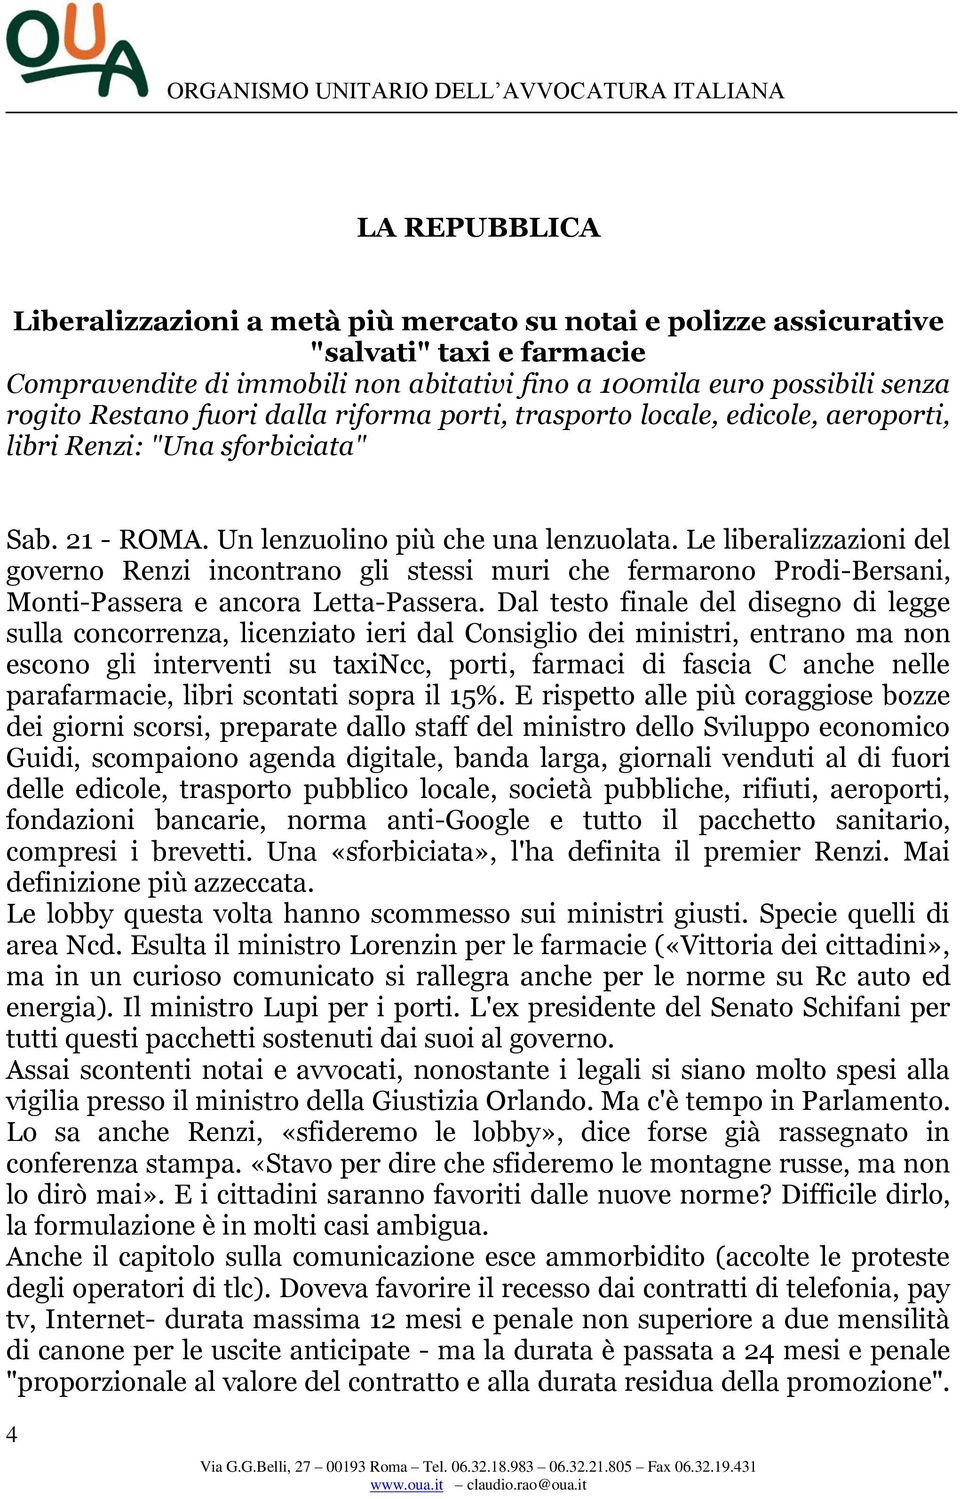 Le liberalizzazioni del governo Renzi incontrano gli stessi muri che fermarono Prodi-Bersani, Monti-Passera e ancora Letta-Passera.